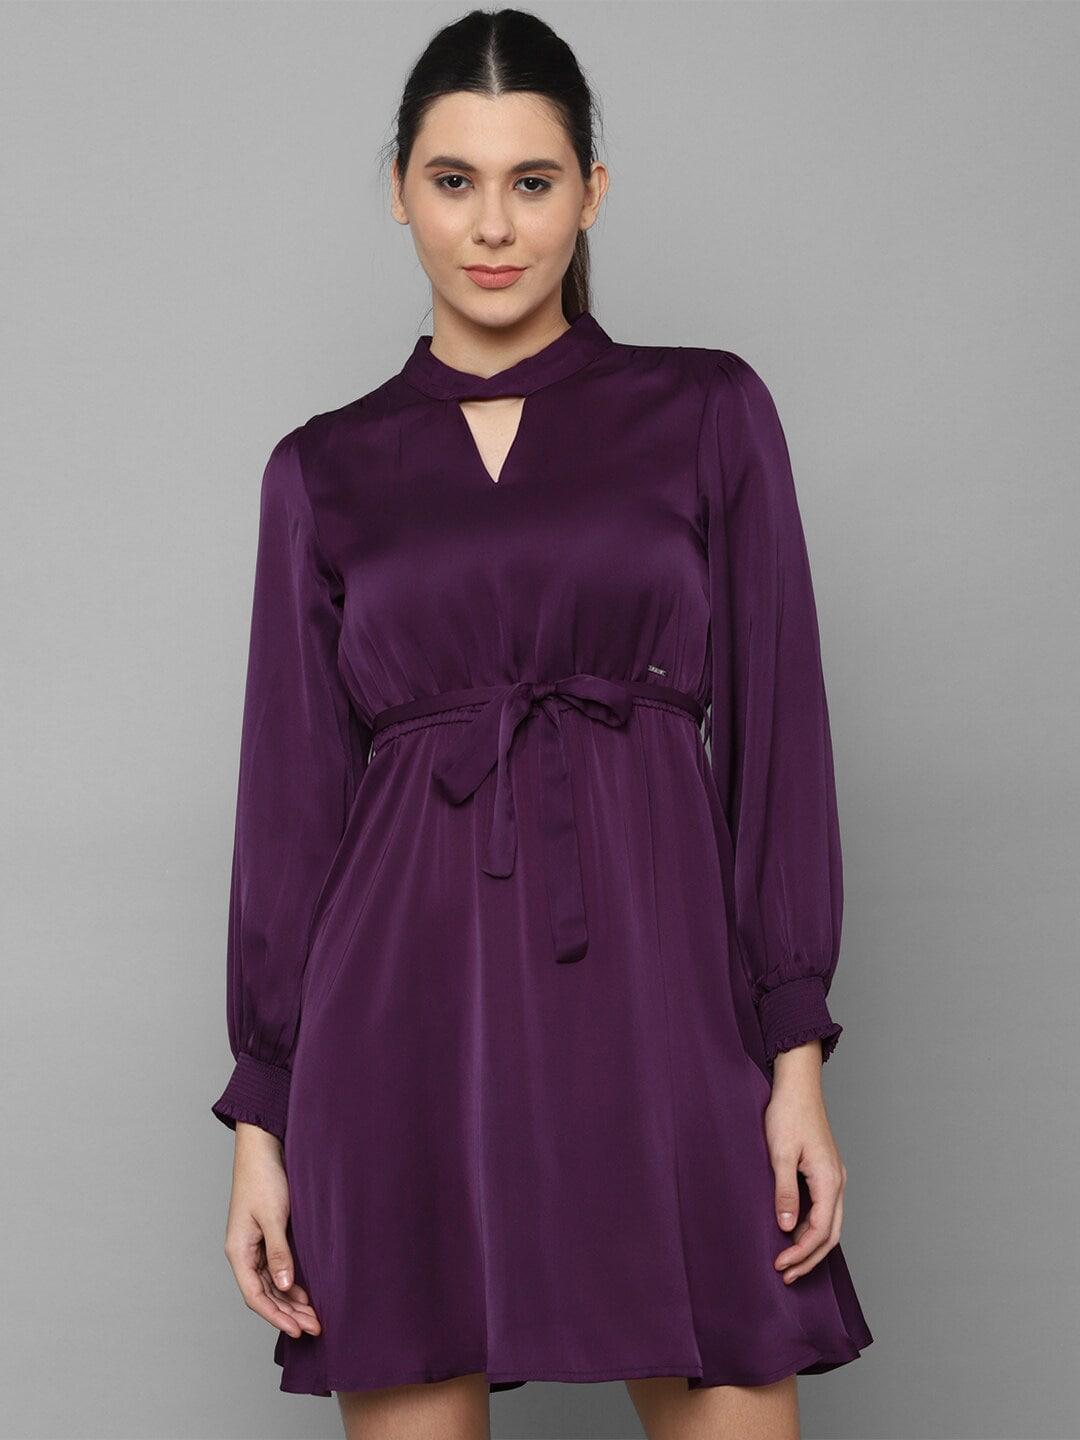 allen solly woman women purple choker neck dress